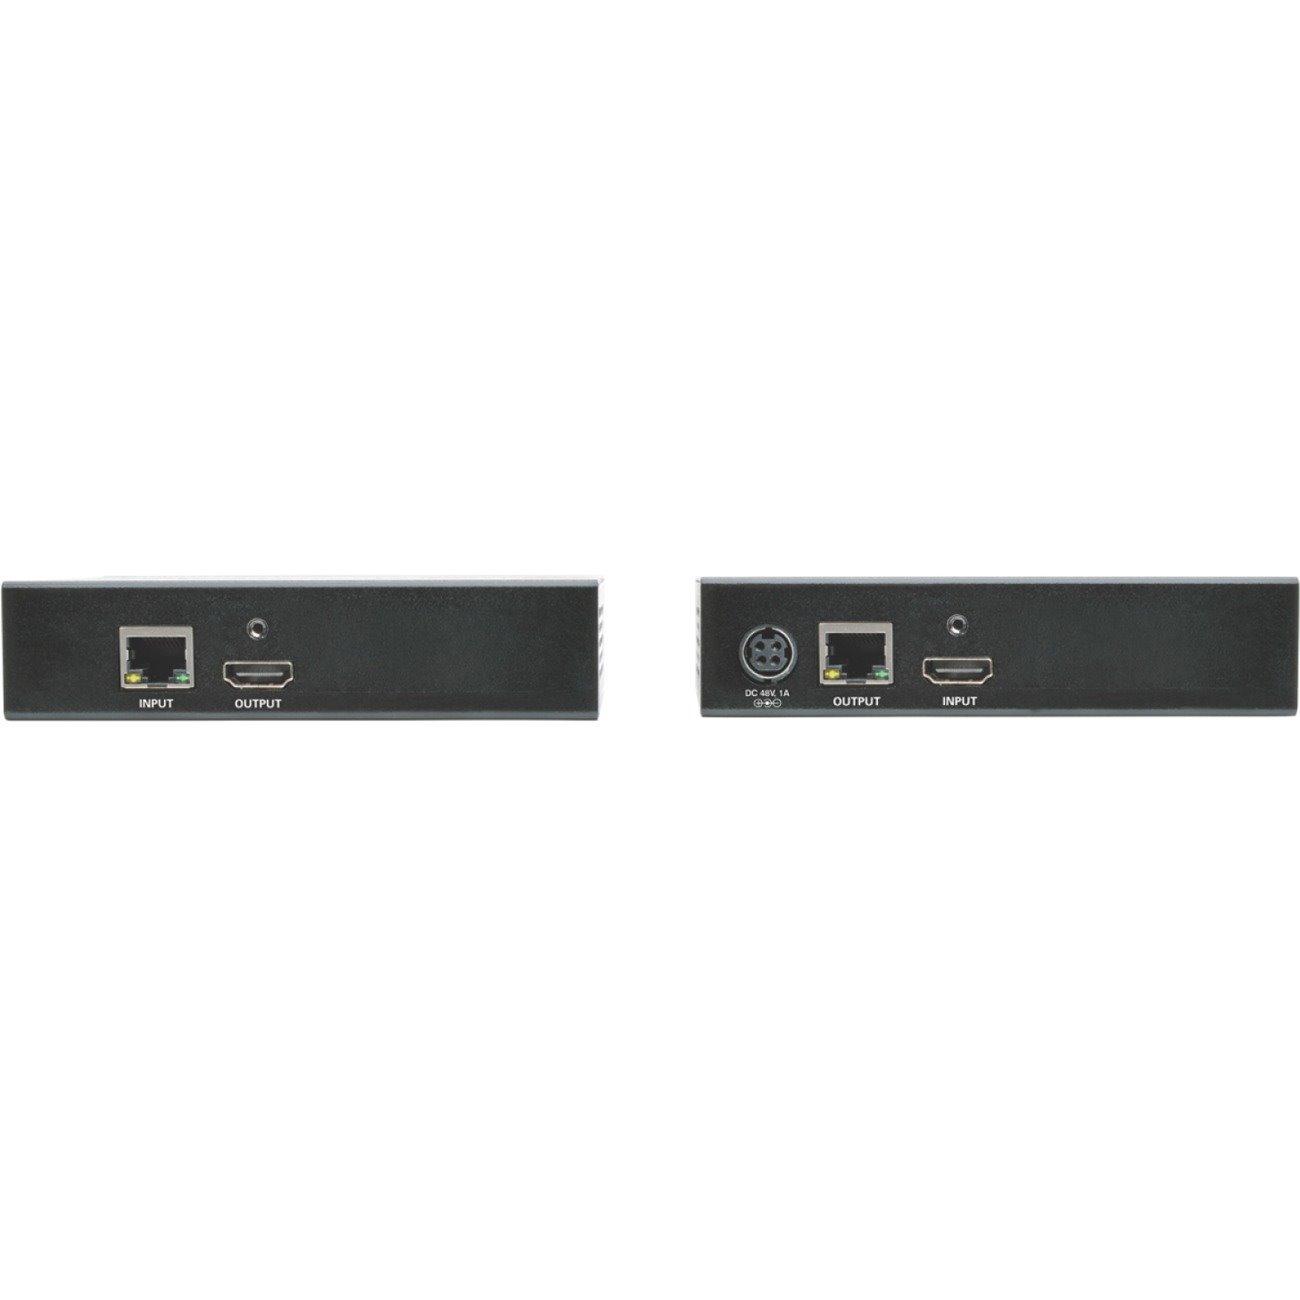 Tripp Lite by Eaton HDBaseT Class B (HDBaseT-Lite) HDMI over Cat5e/6/6a Extender Kit, Power & IR Control, 4K x 2K 30 Hz UHD / 1080p 60 Hz, Up to 230 ft. (70 m), TAA